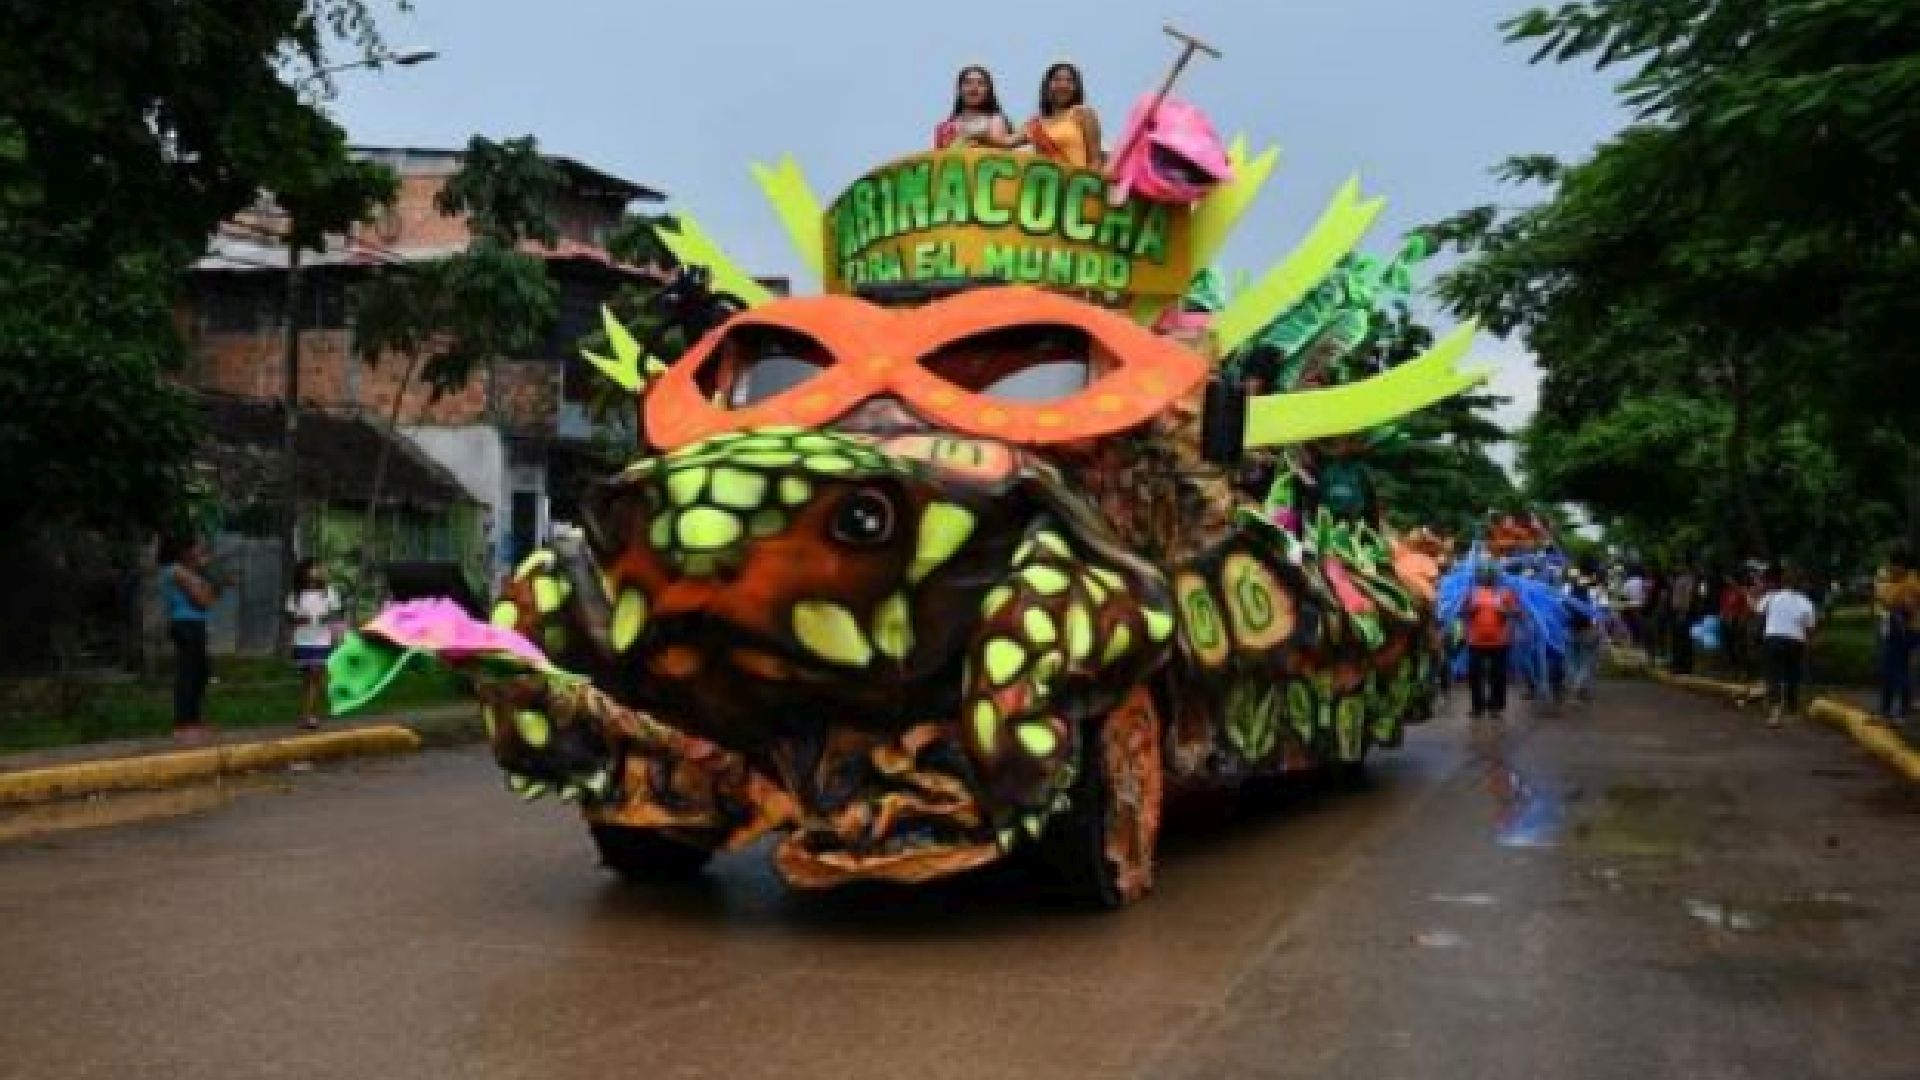 Las comparsas de carros alegóricos son una tradición de los Carnavales de Ucayali. (Andina)